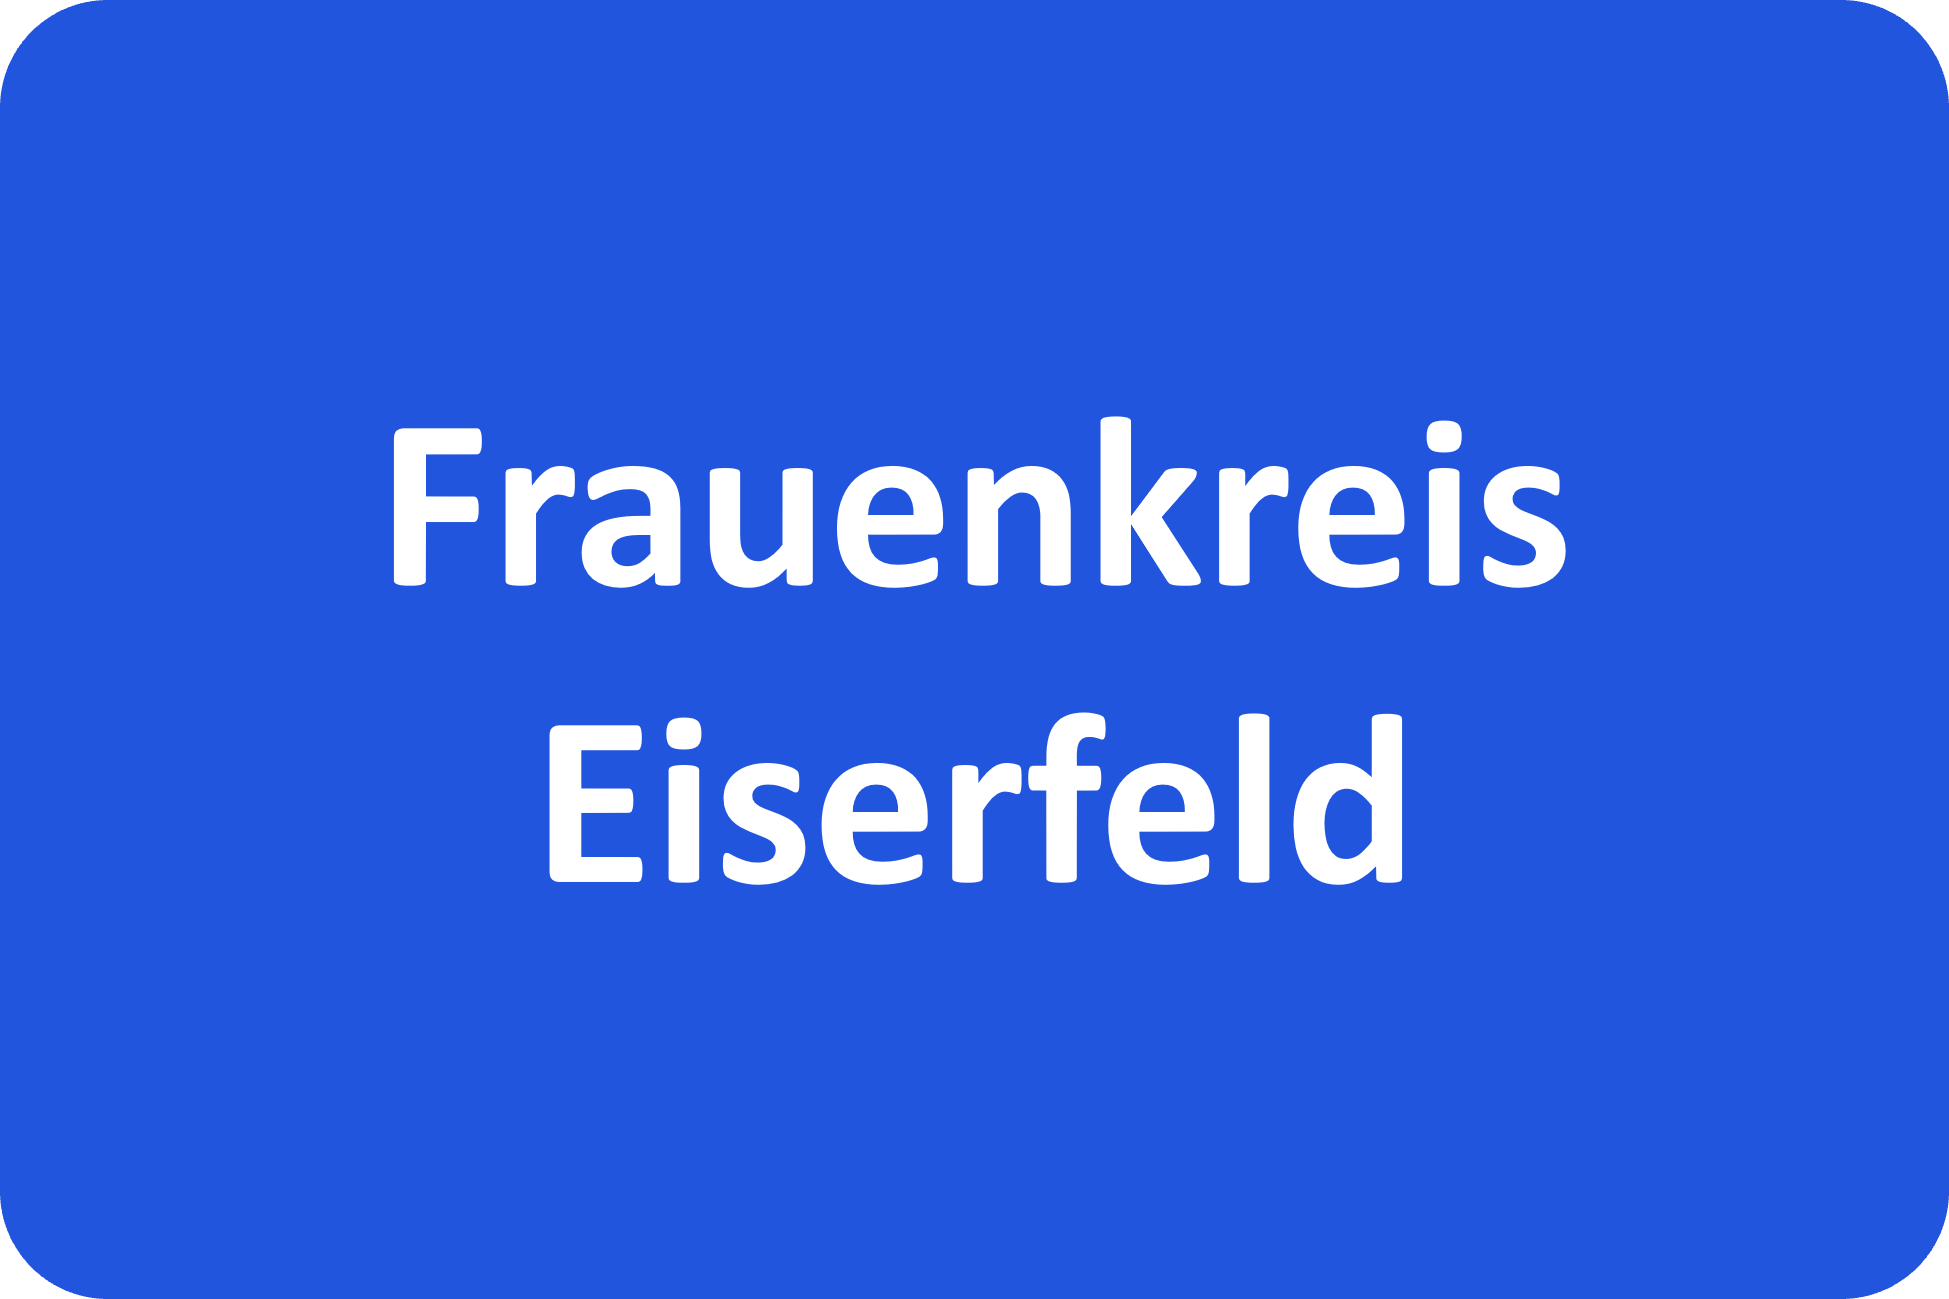 Frauenkreis Eiserfeld